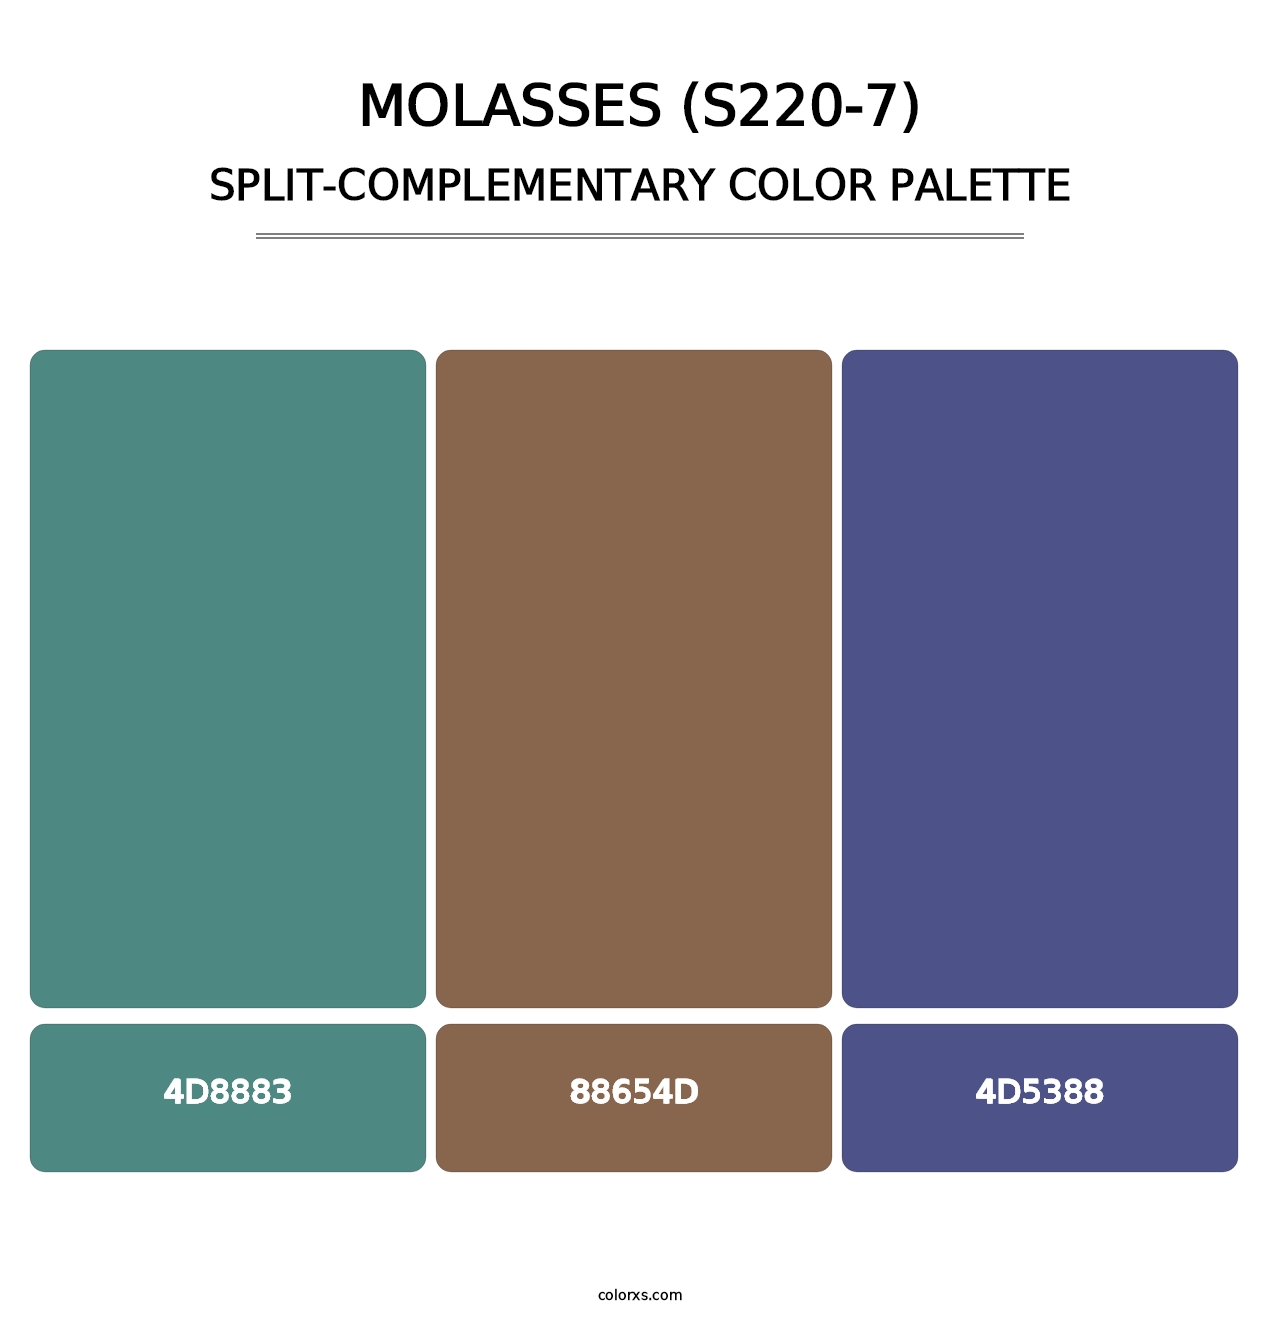 Molasses (S220-7) - Split-Complementary Color Palette